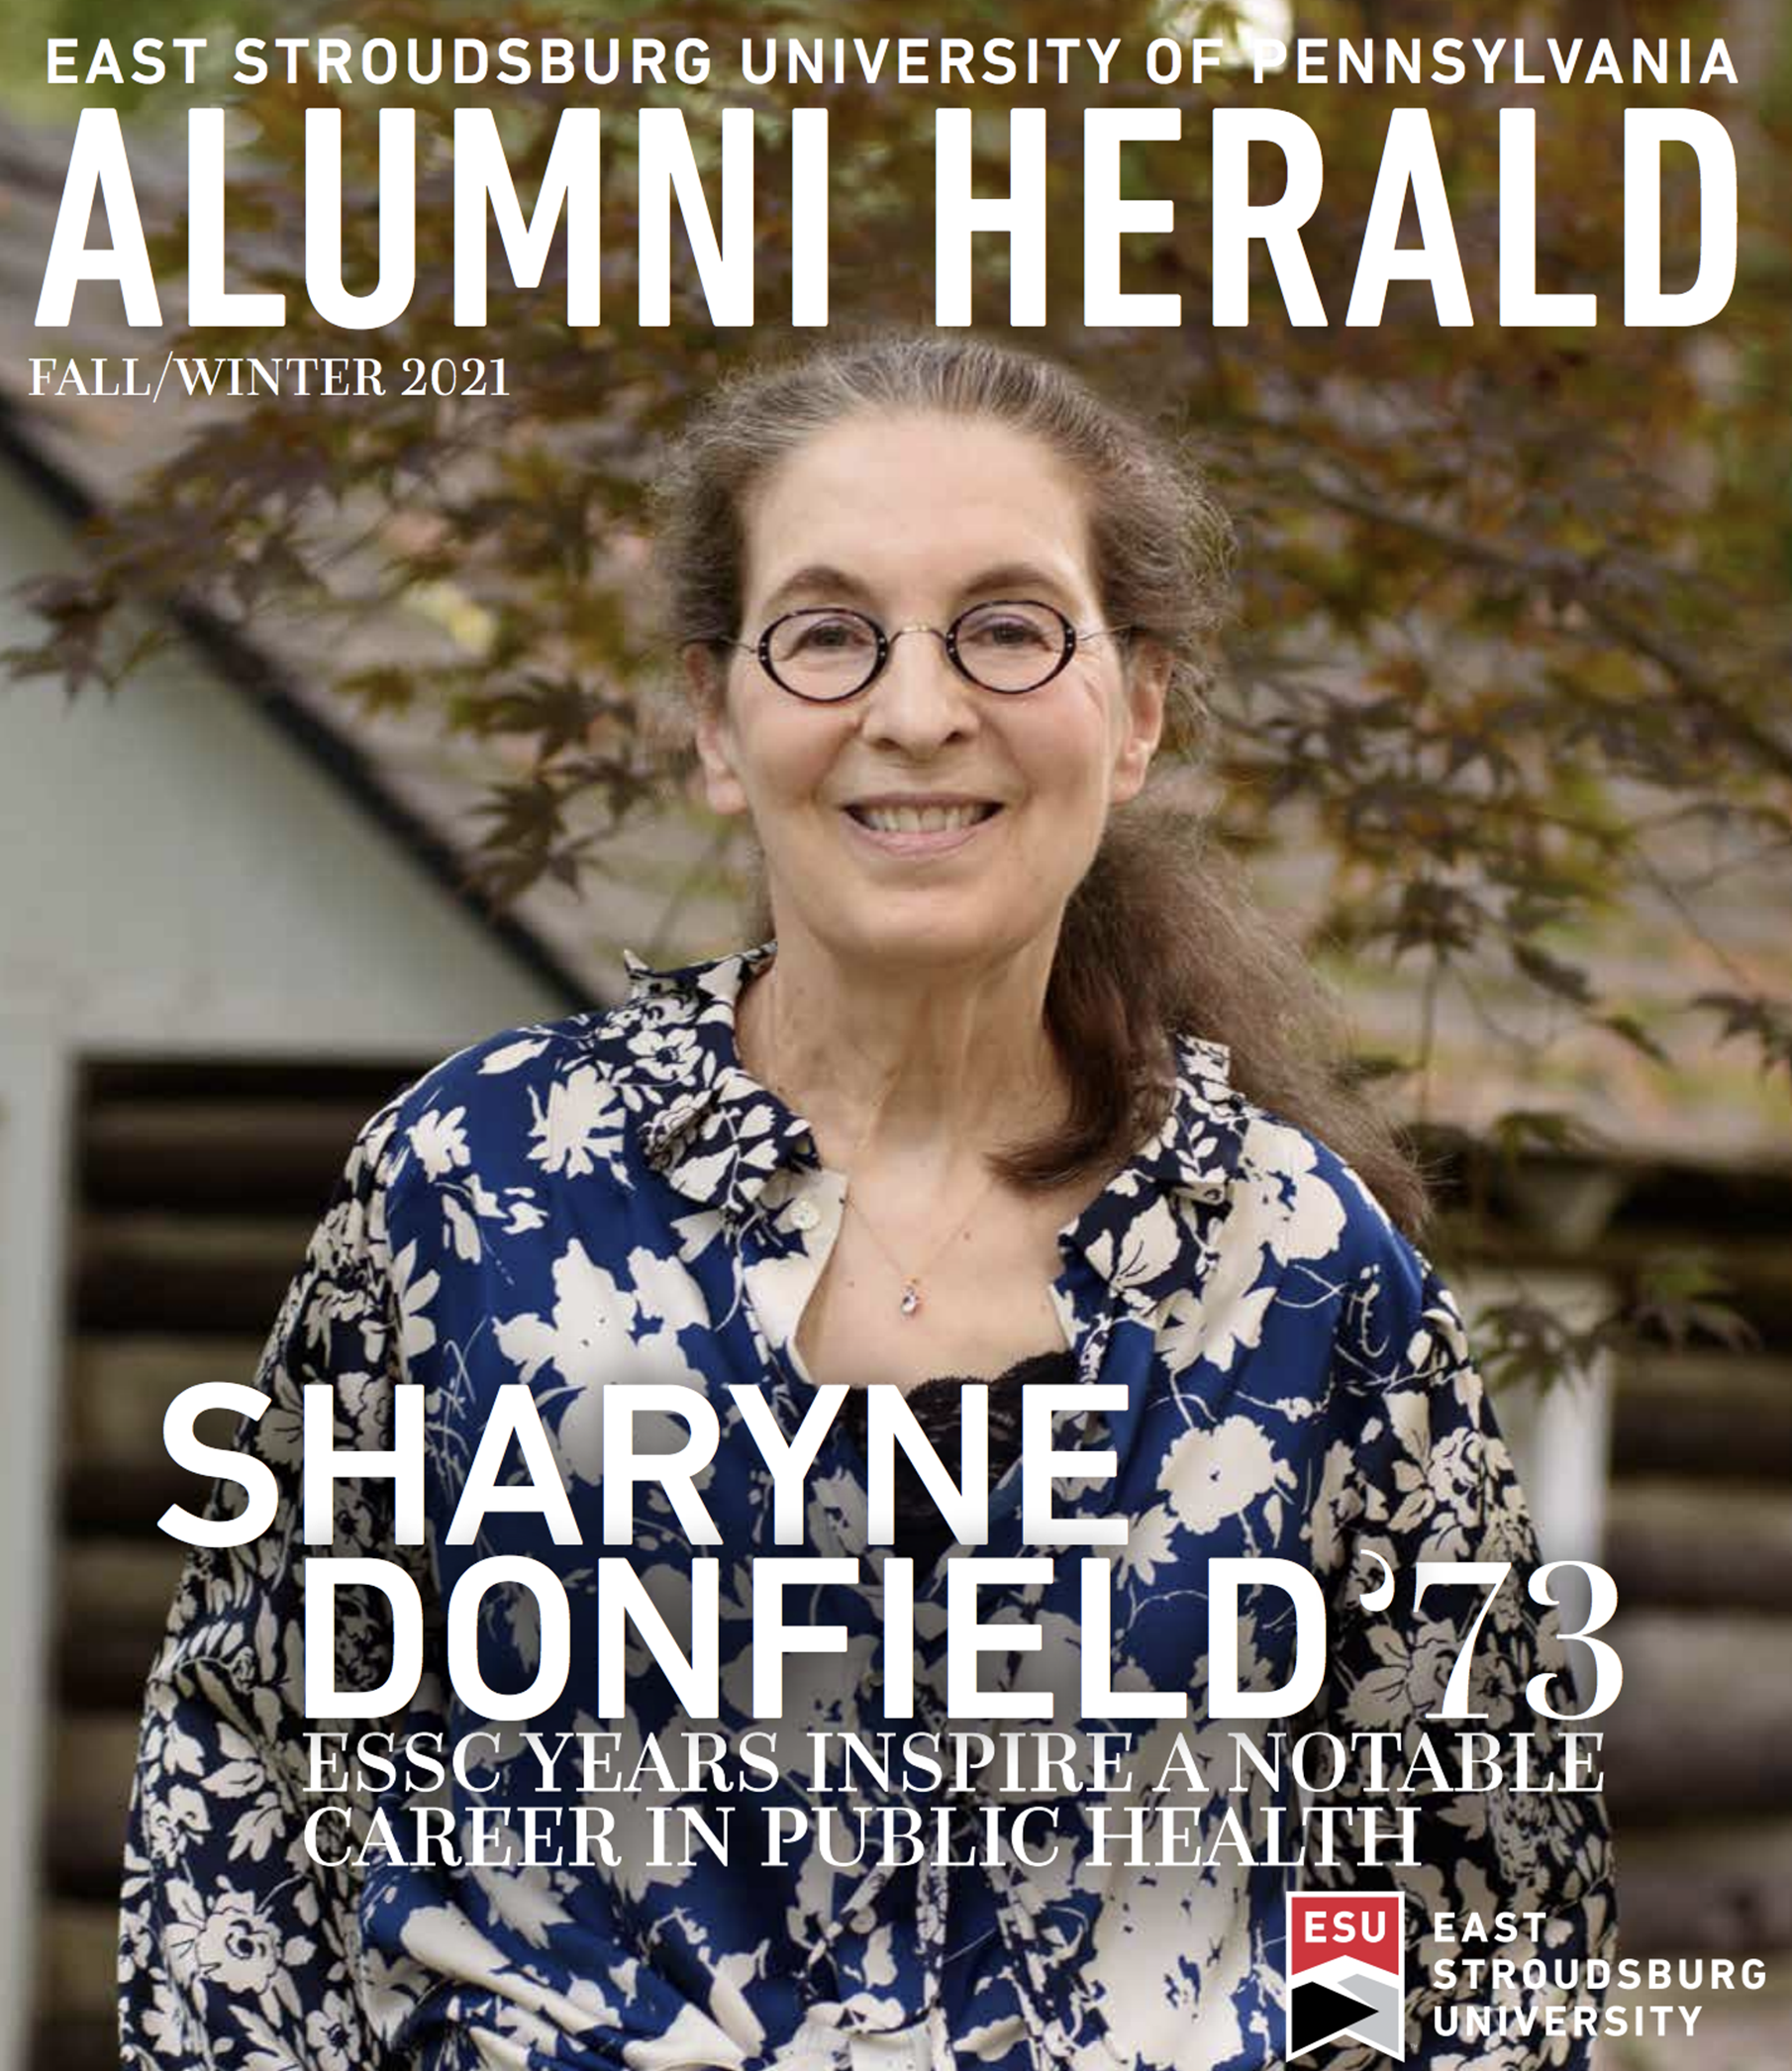 Alumni Herald Fall/Winter 2021